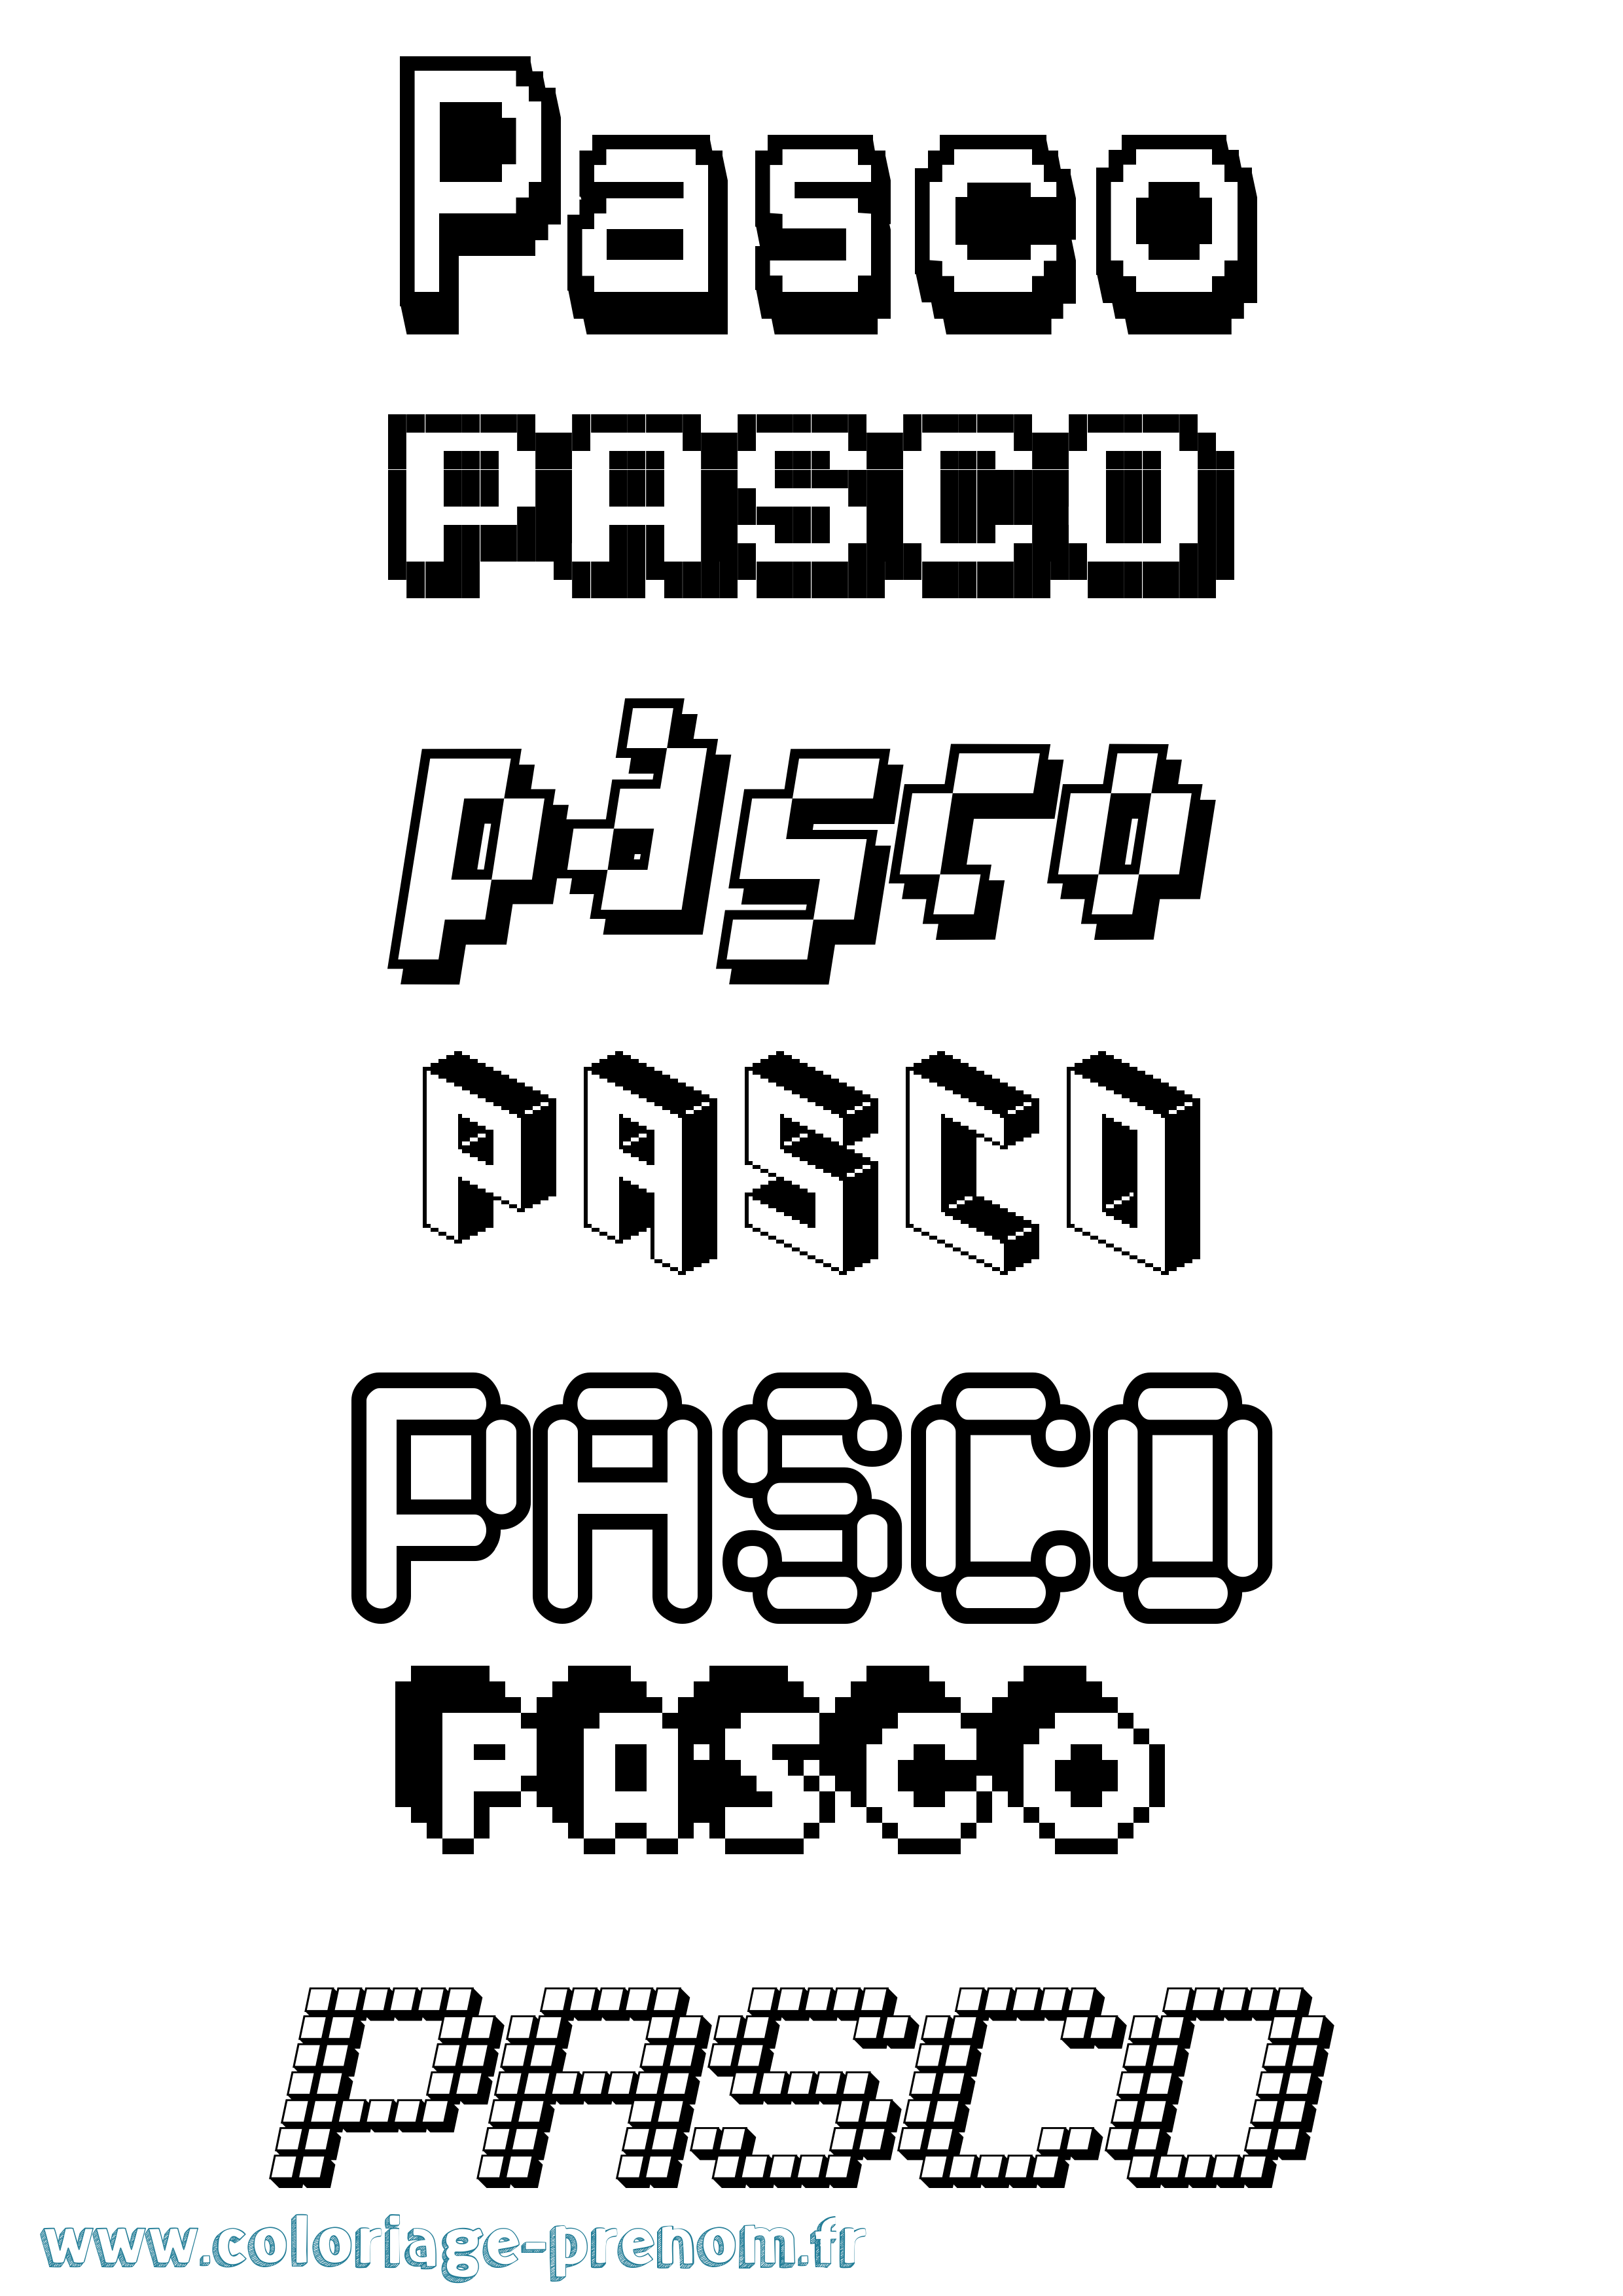 Coloriage prénom Pasco Pixel